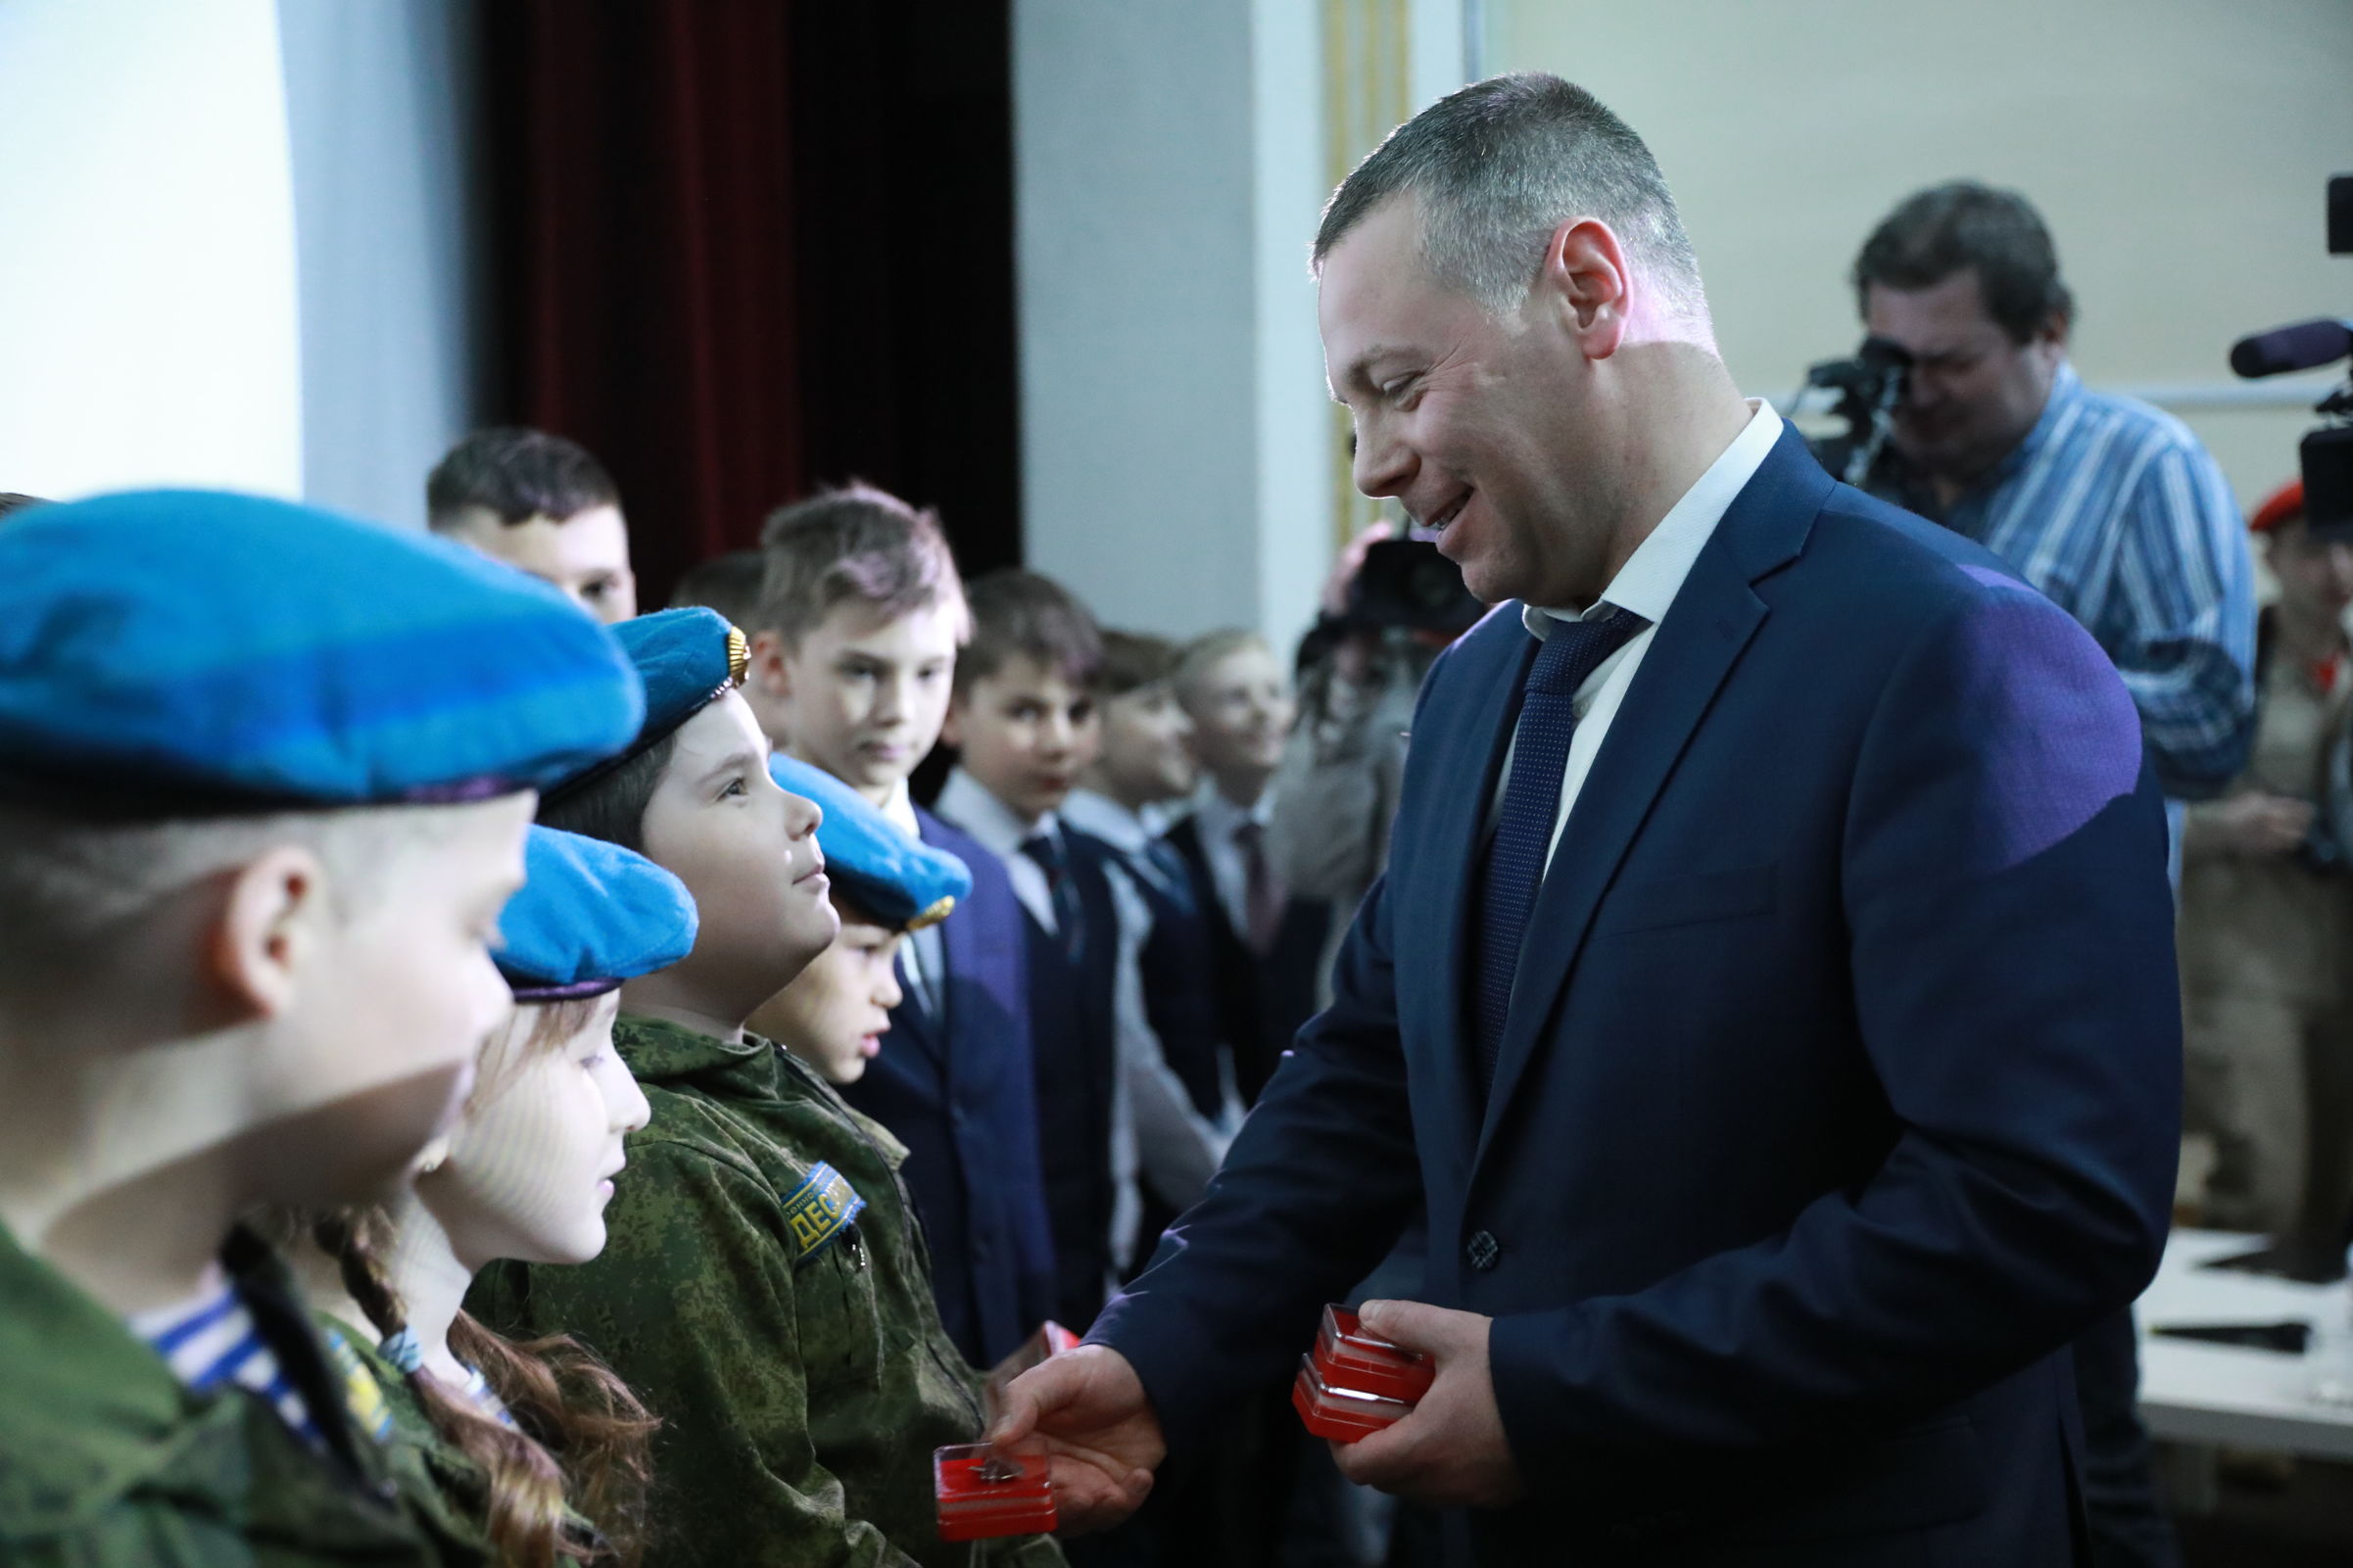 Михаил Евраев, руководство реготделения «Юнармии» и военного училища ПВО подписали соглашение о развитии юнармейского движения